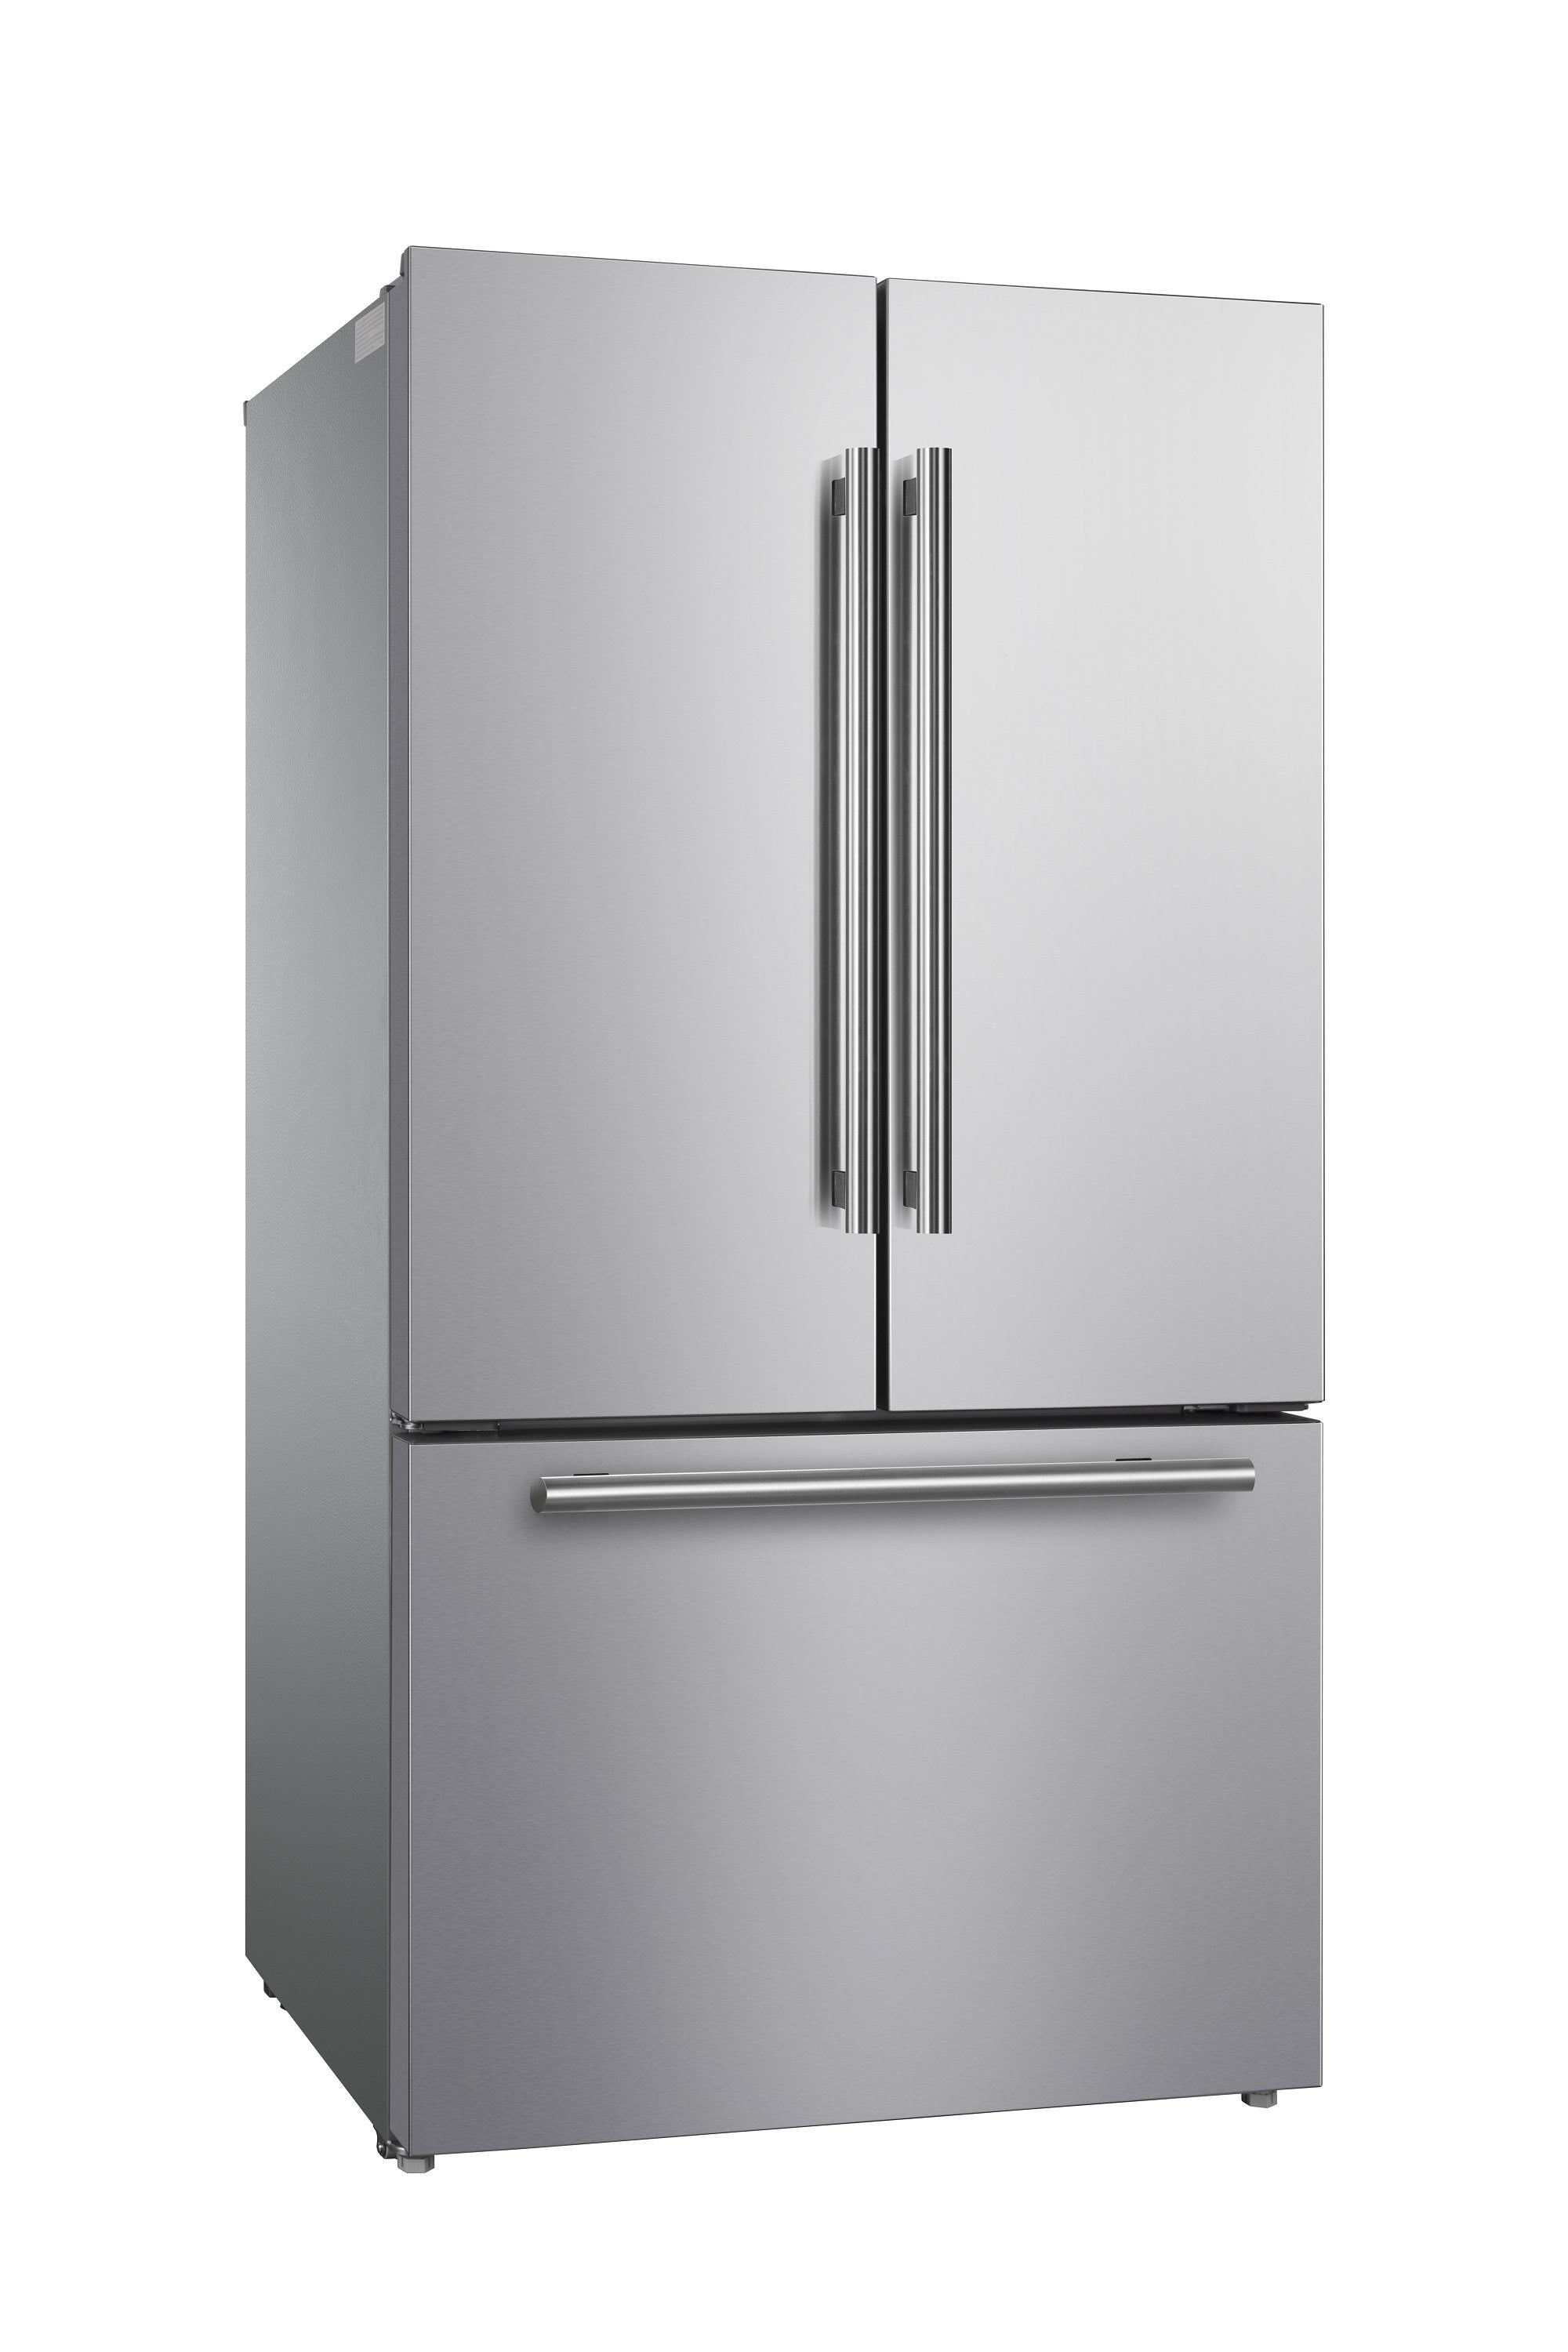 Preston Stainless Steel 3-Door French Door Refrigerator